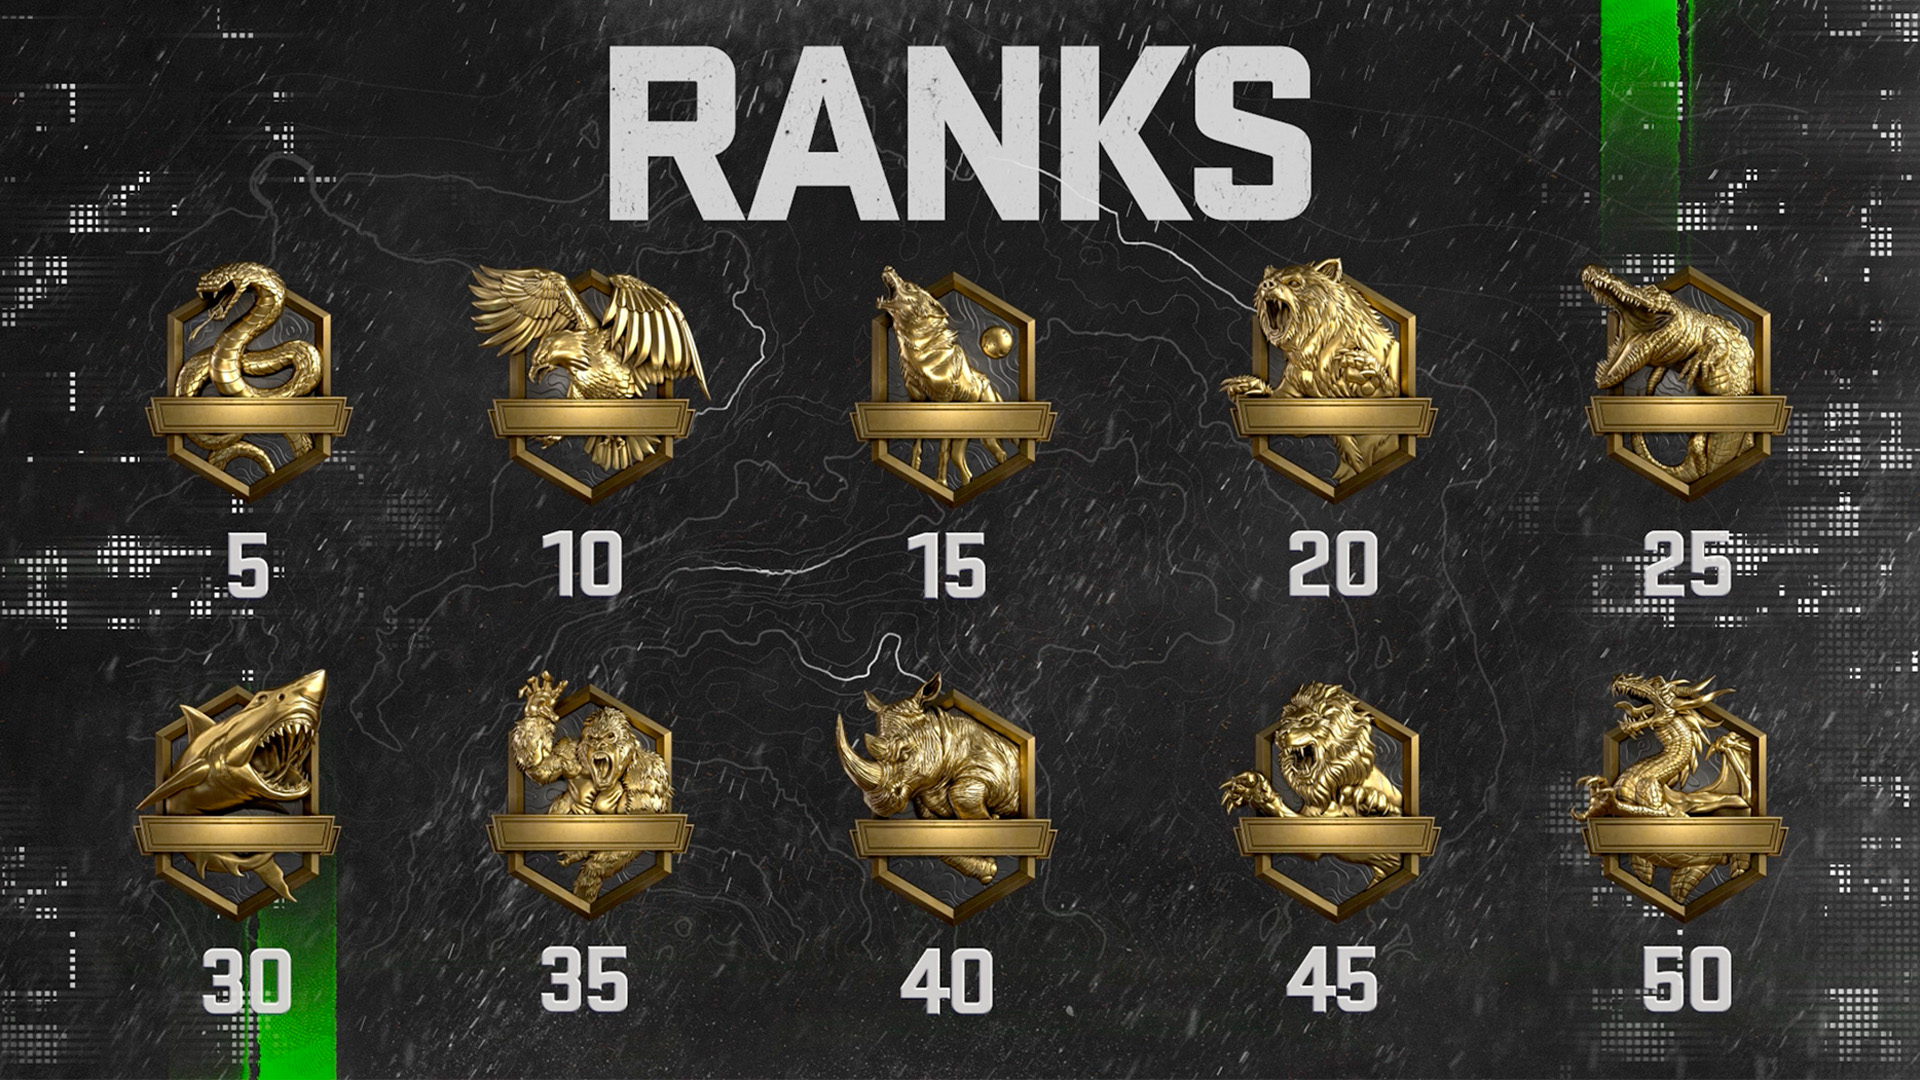 MW2 ranked play skill divisions, ranks, and rewards PCGamesN